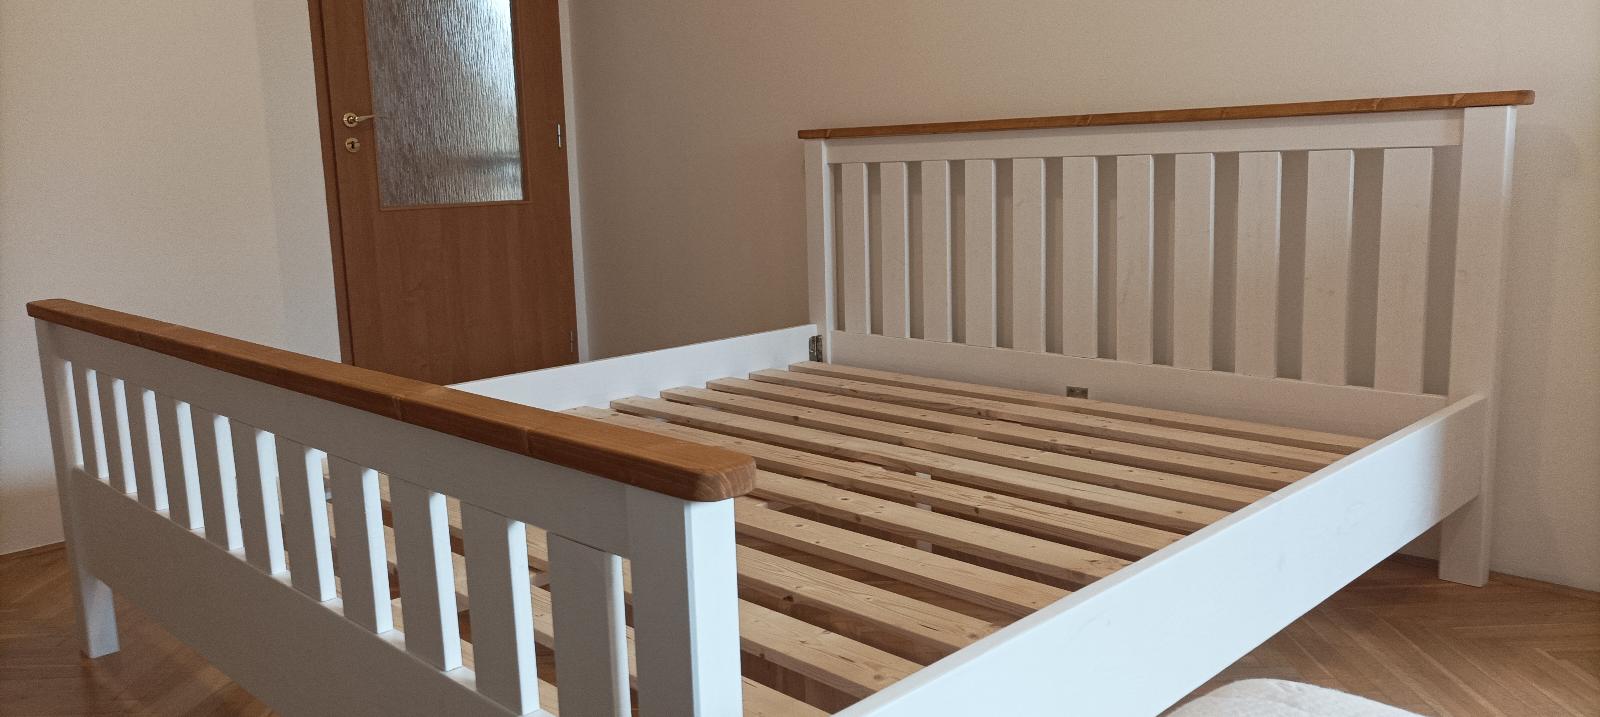 Dřevěná bílá masivní postel 180x200 včetně roštu - Ložnice